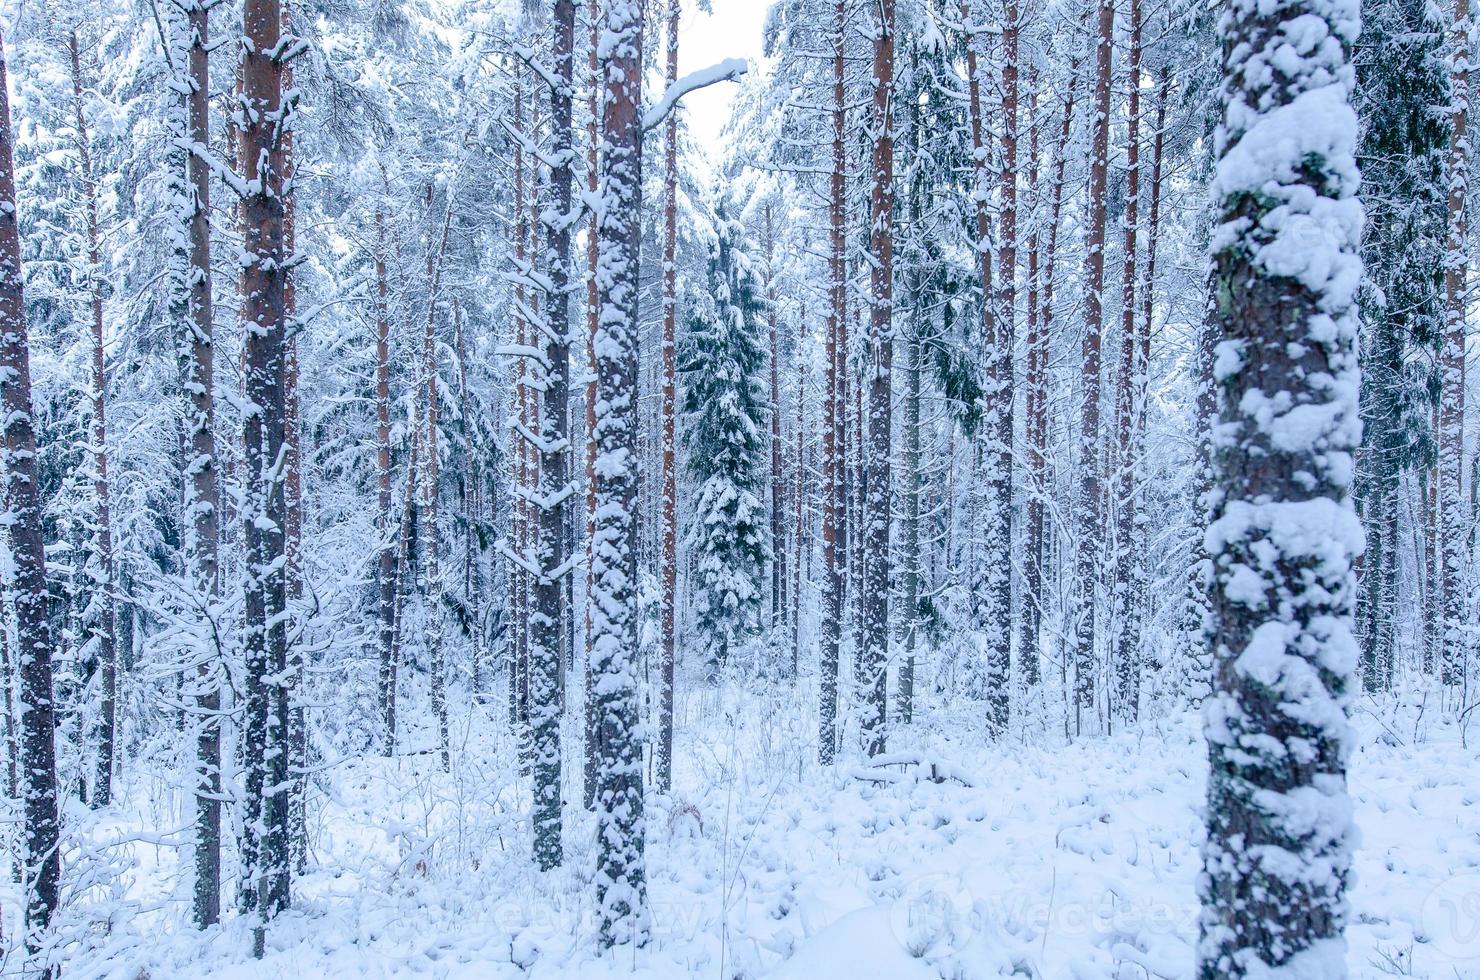 árboles cubiertos de nieve en el bosque de invierno foto